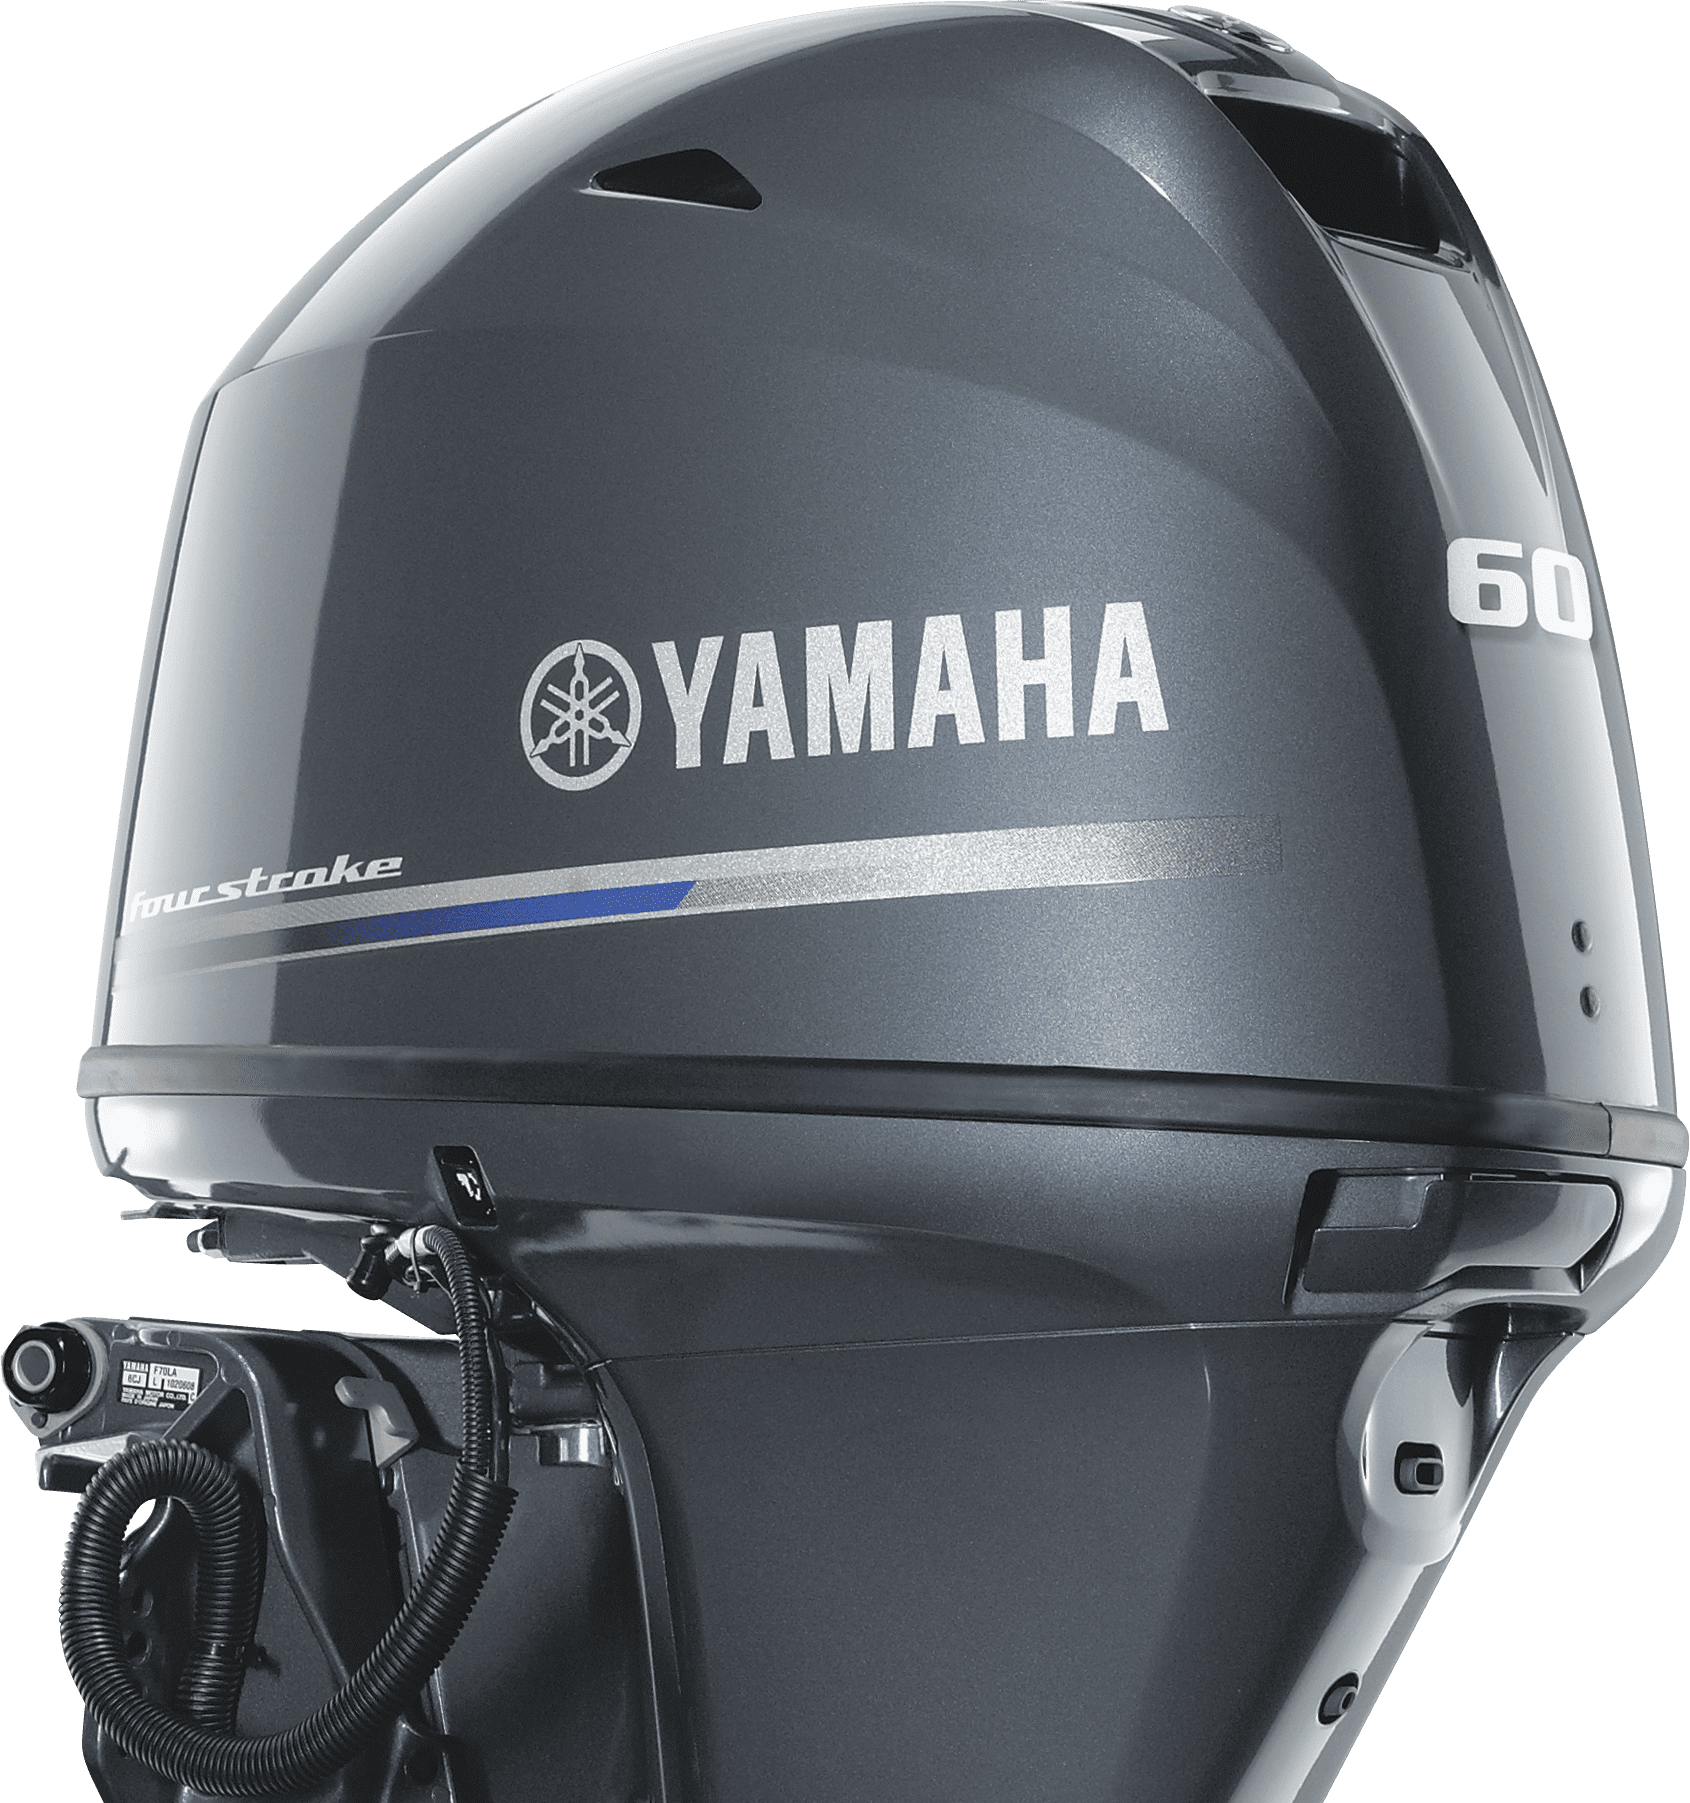 Ямаха 50 купить лодочный. Лодочный мотор Yamaha f60. Лодочный мотор Yamaha f60fetl. Лодочный мотор Yamaha 60. Лодочный мотор Ямаха f 60.